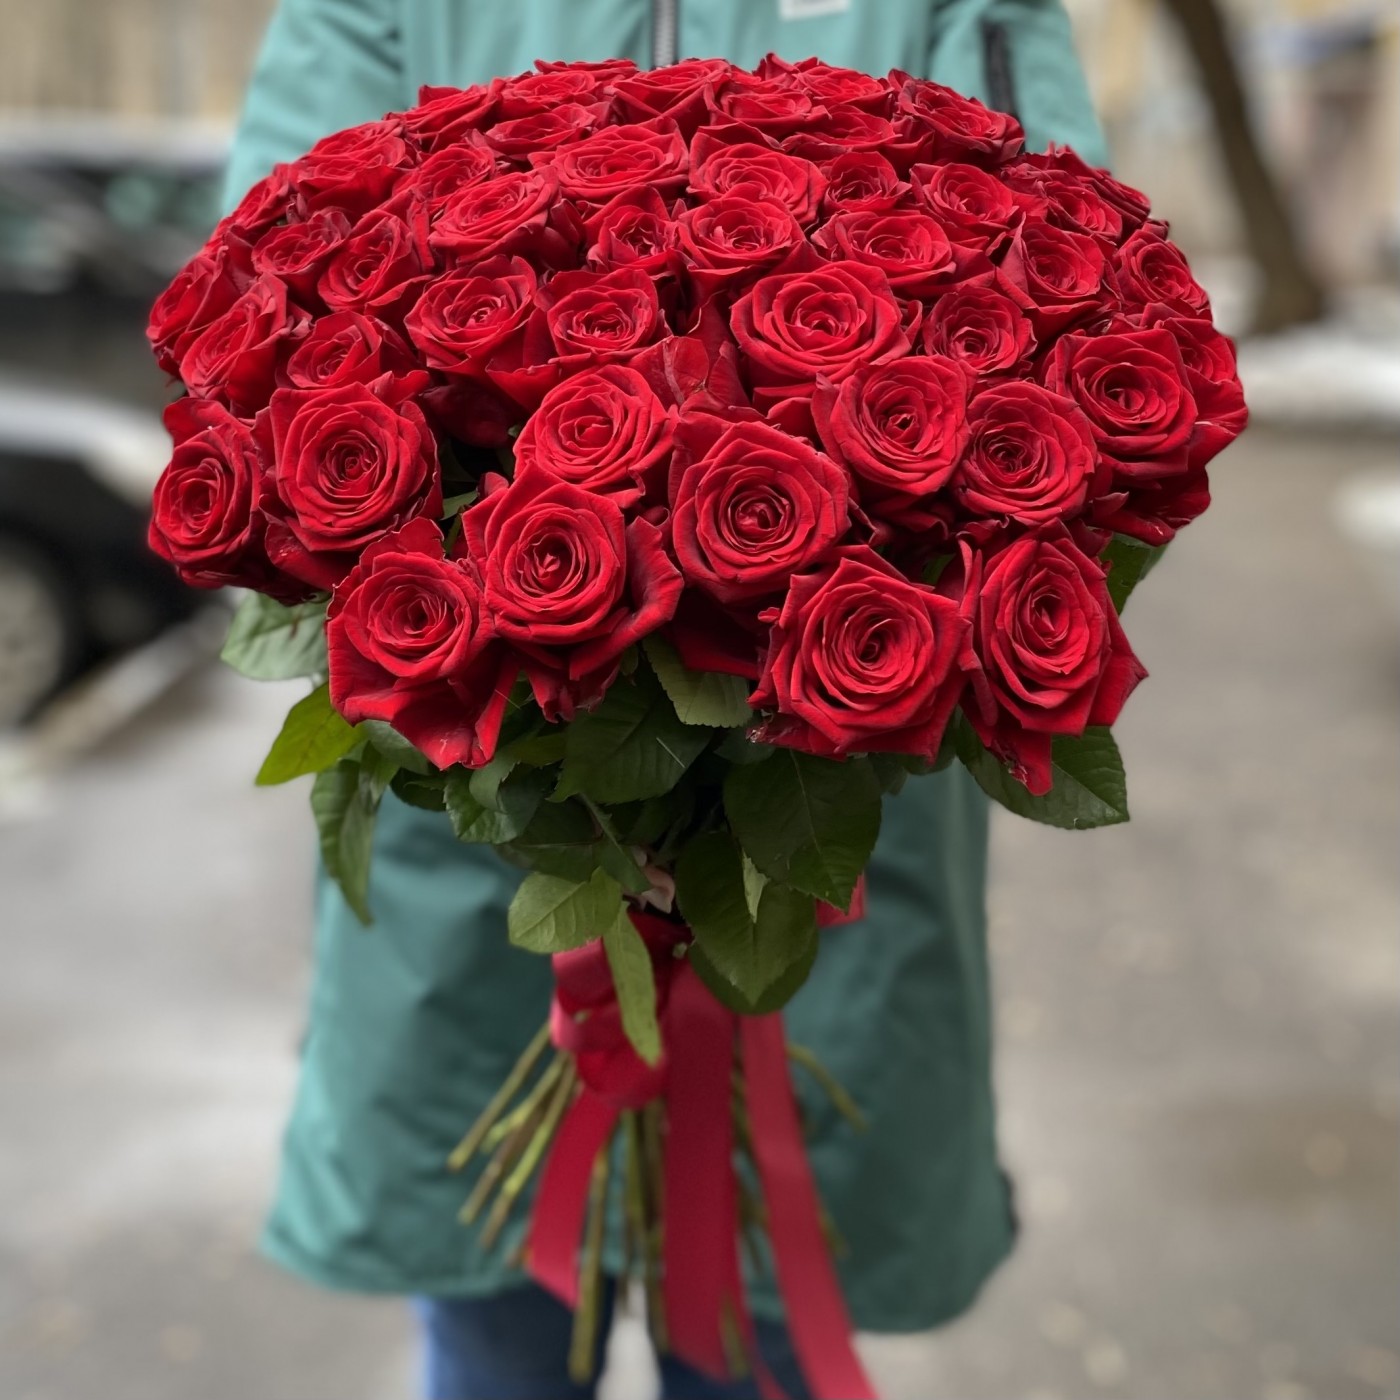 Акция на розы москва купить недорого многолетние цветы на дачу